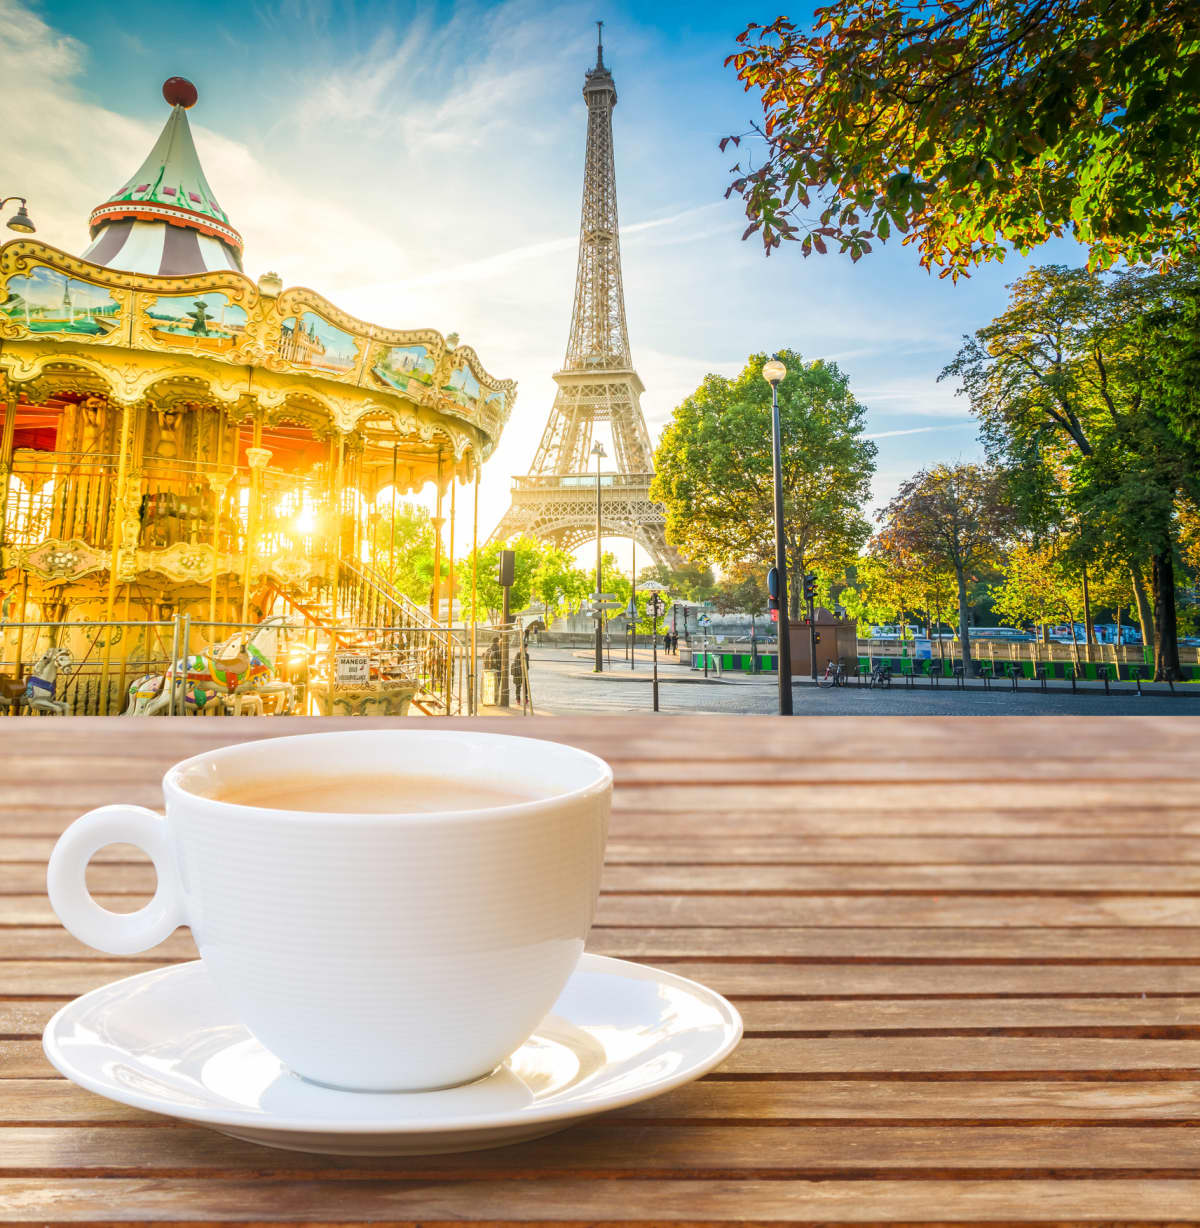 View of Paris landmarks behind a mug of coffee